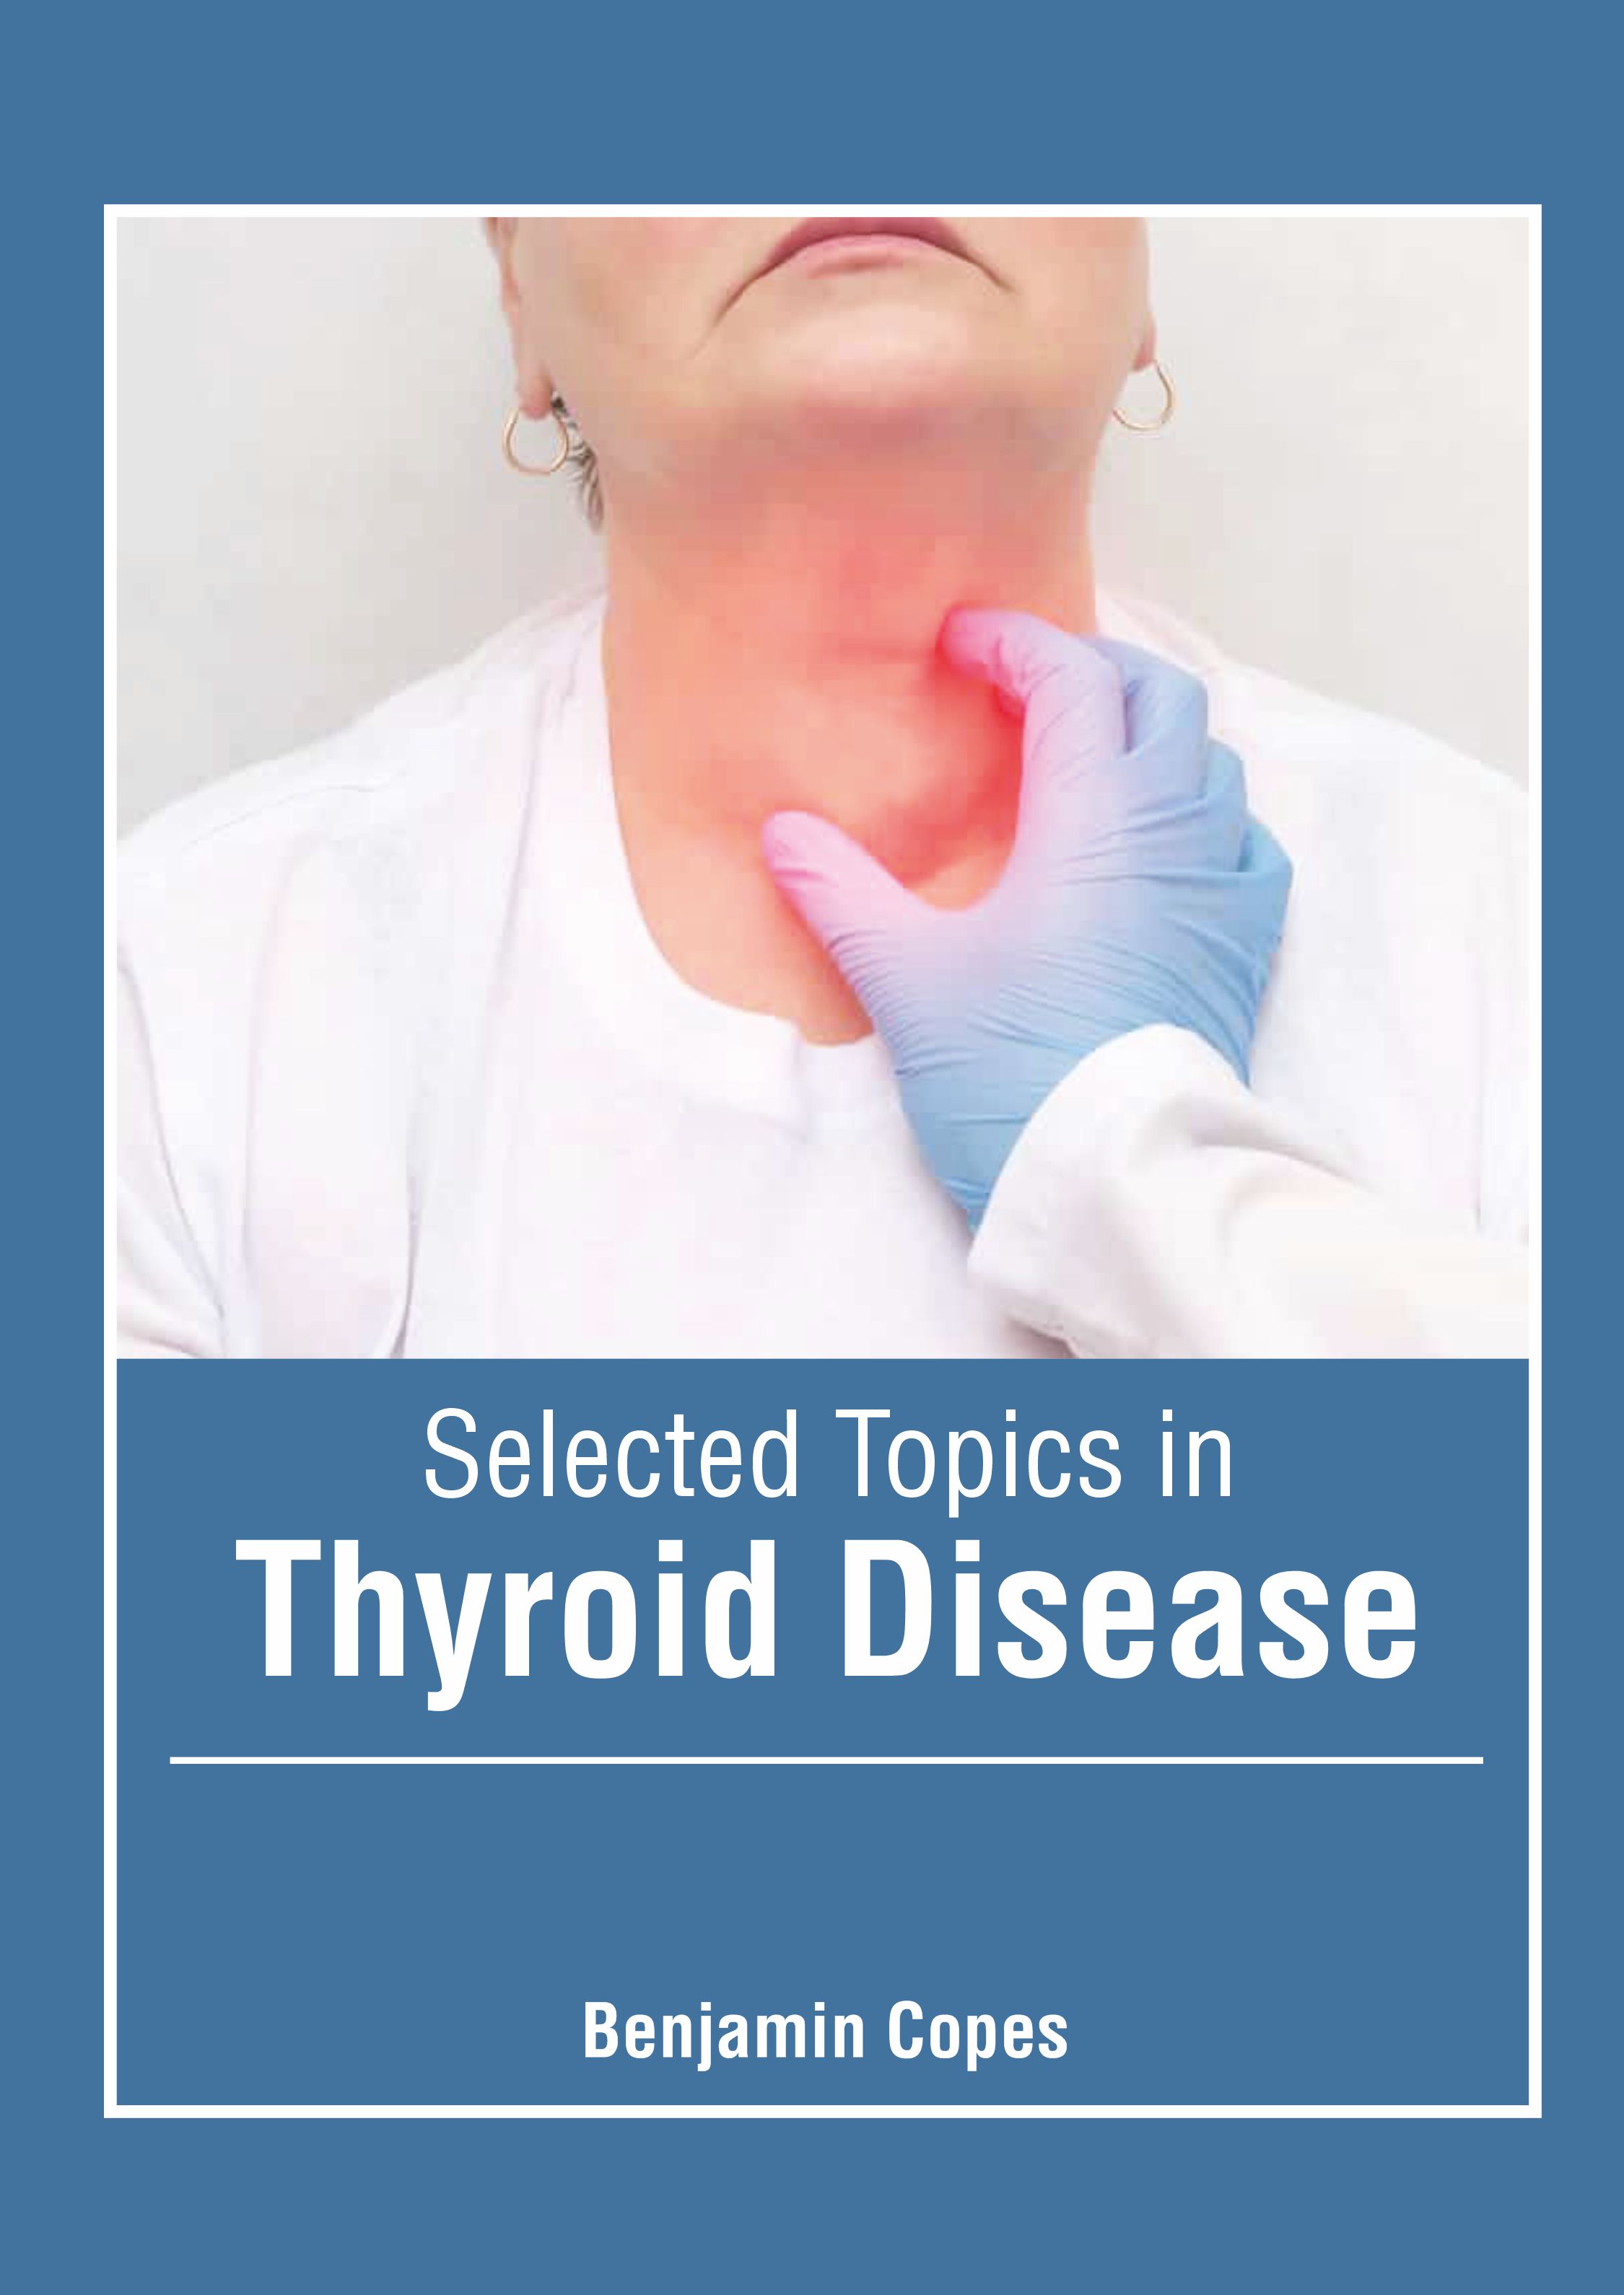 SELECTED TOPICS IN THYROID DISEASE